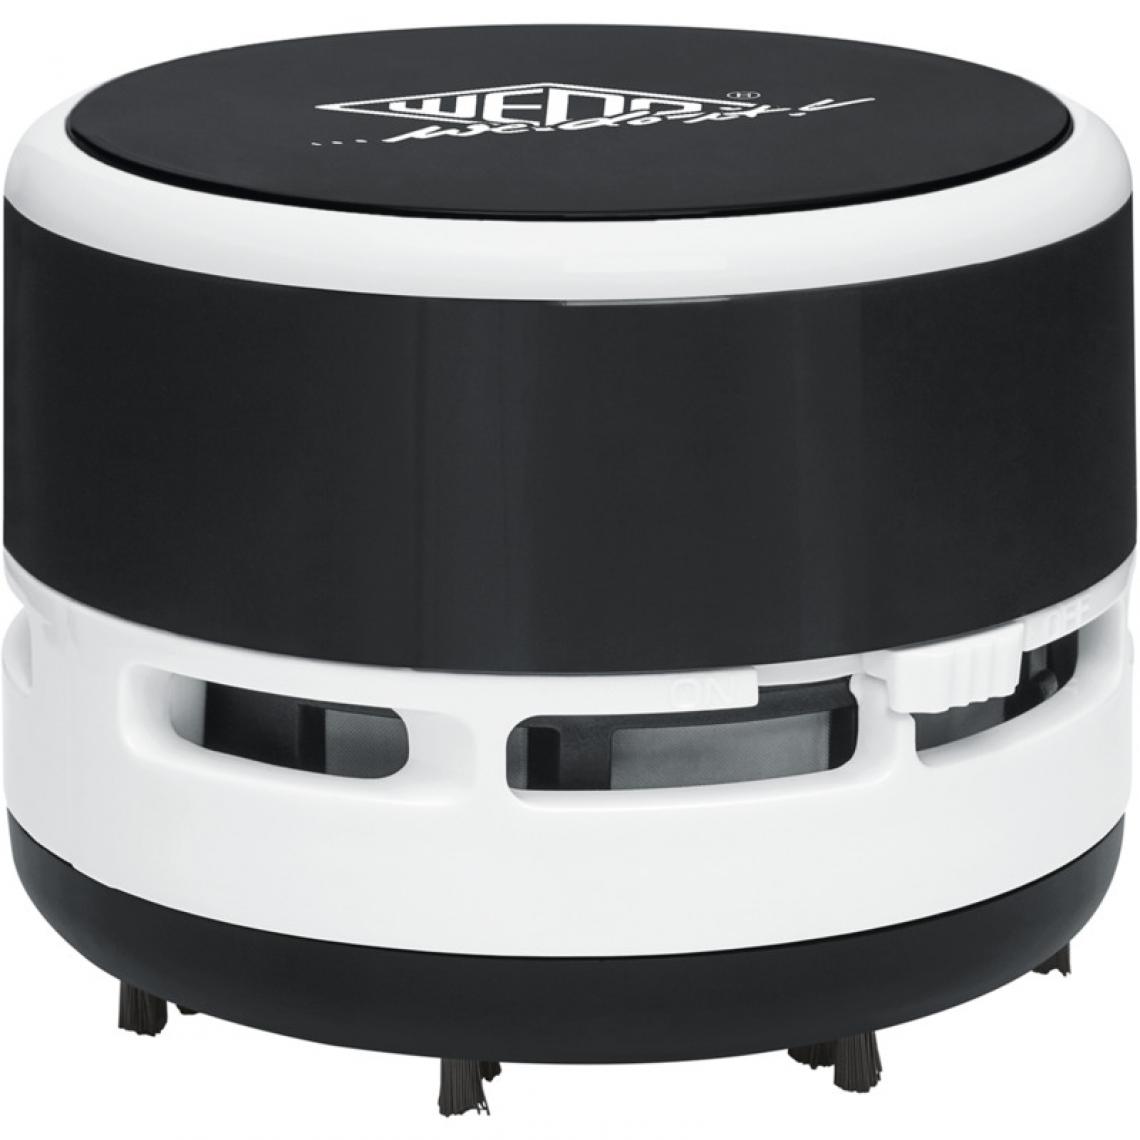 Wedo - WEDO Aspirateur de table, plastique noir/blanc () - Aspirateur robot